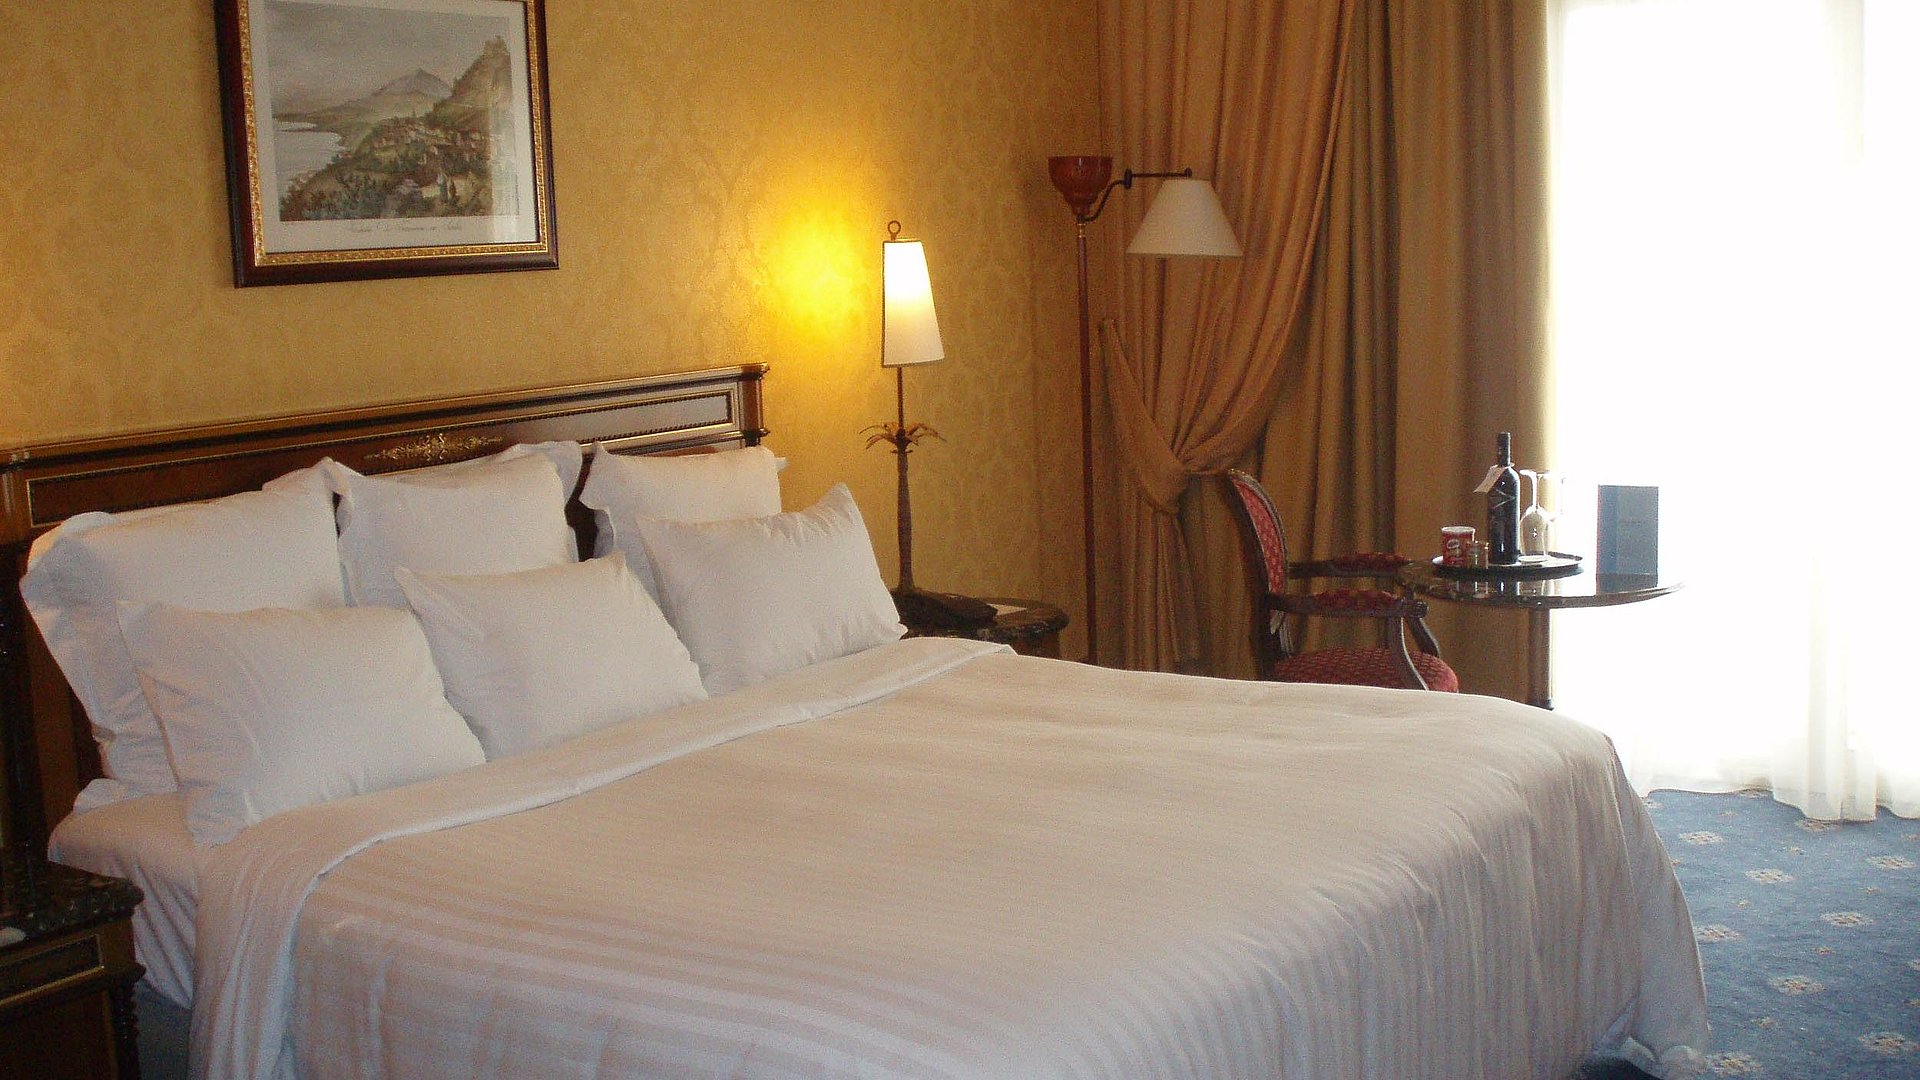 Pauschalangebote für das Wochenende für Unterkünfte in der Fränkischen Schweiz - sehr ordentliches Hotelzimmer mit großem Bett und warmer Nachtlampe wird durch weiße Gardinen durchleuchtet